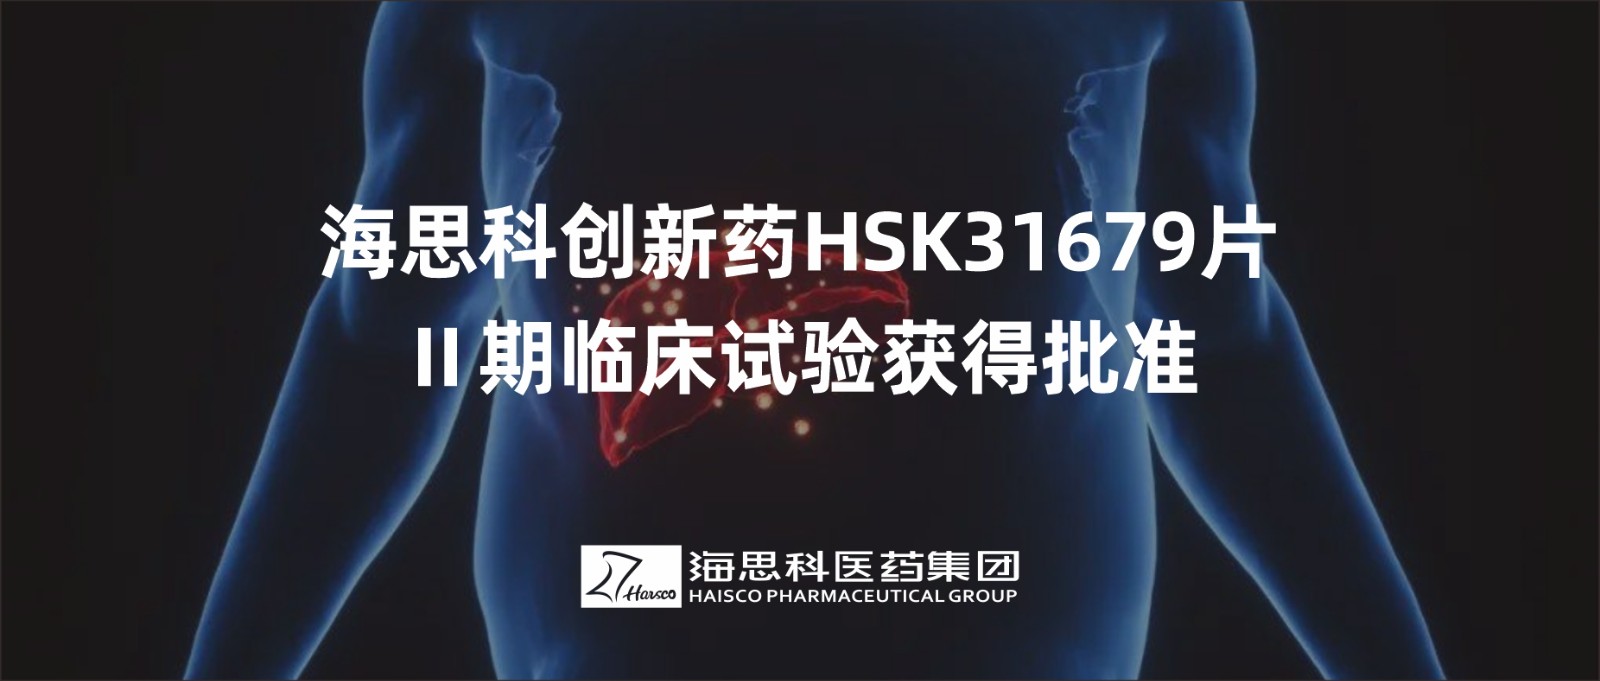 云顶国际官网创新药HSK31679片Ⅱ期临床试验获得批准